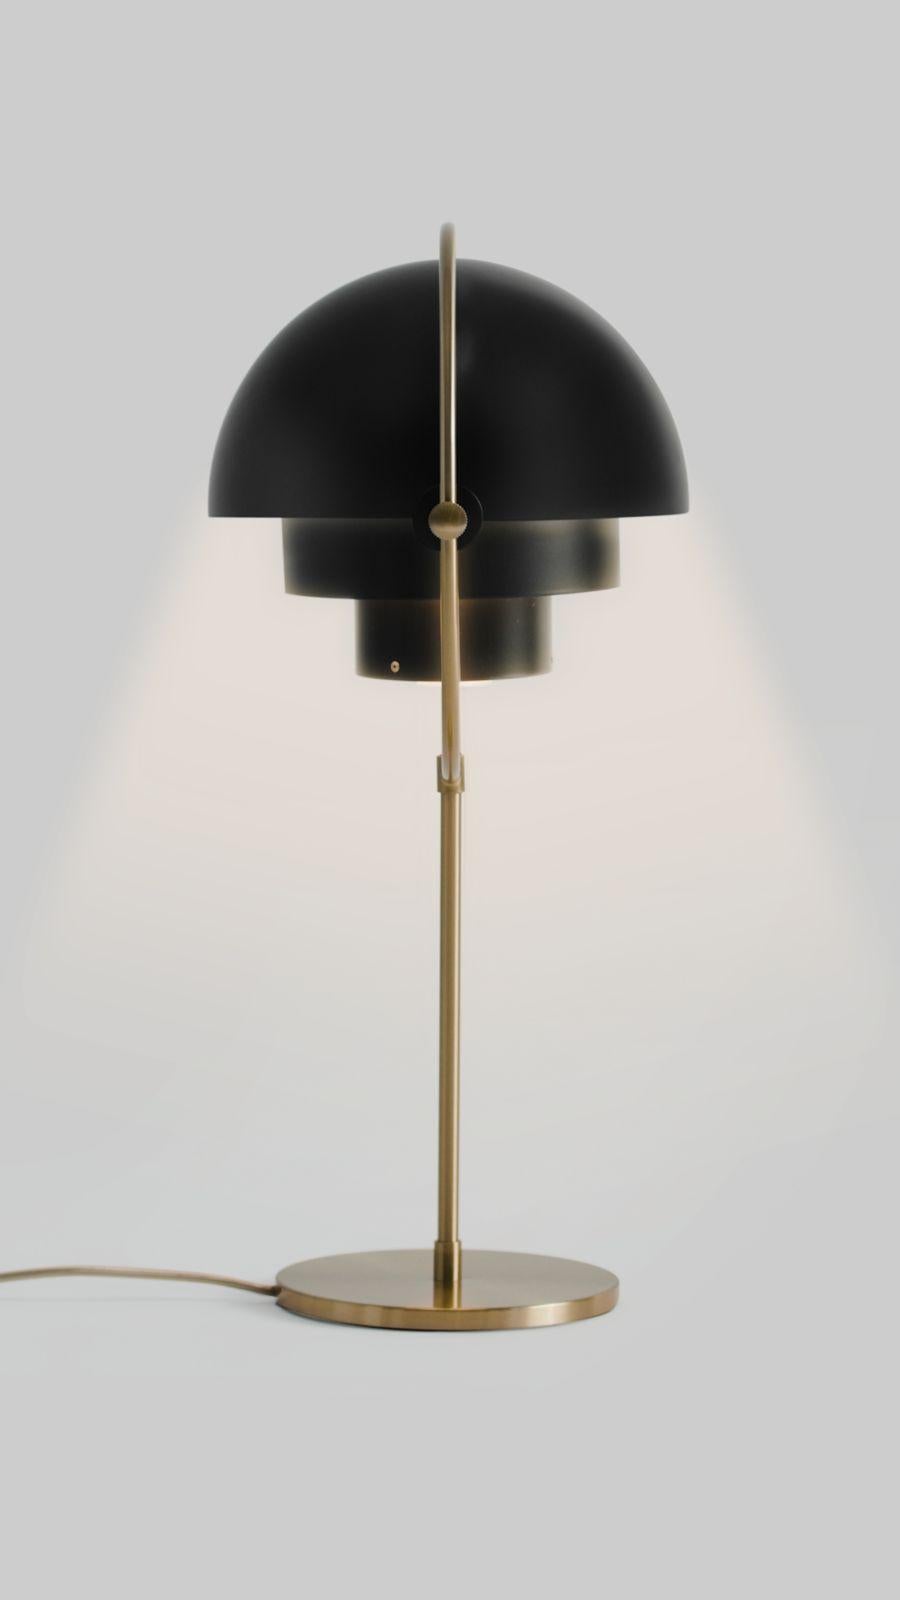 Lampe de table 'Multi-Lite' de Louis Weisdorf en noir et laiton. Conçue en 1972 par Weisdorf, il s'agit d'une réédition autorisée récemment produite par la société danoise Gubi, qui reproduit méticuleusement son travail avec une attention